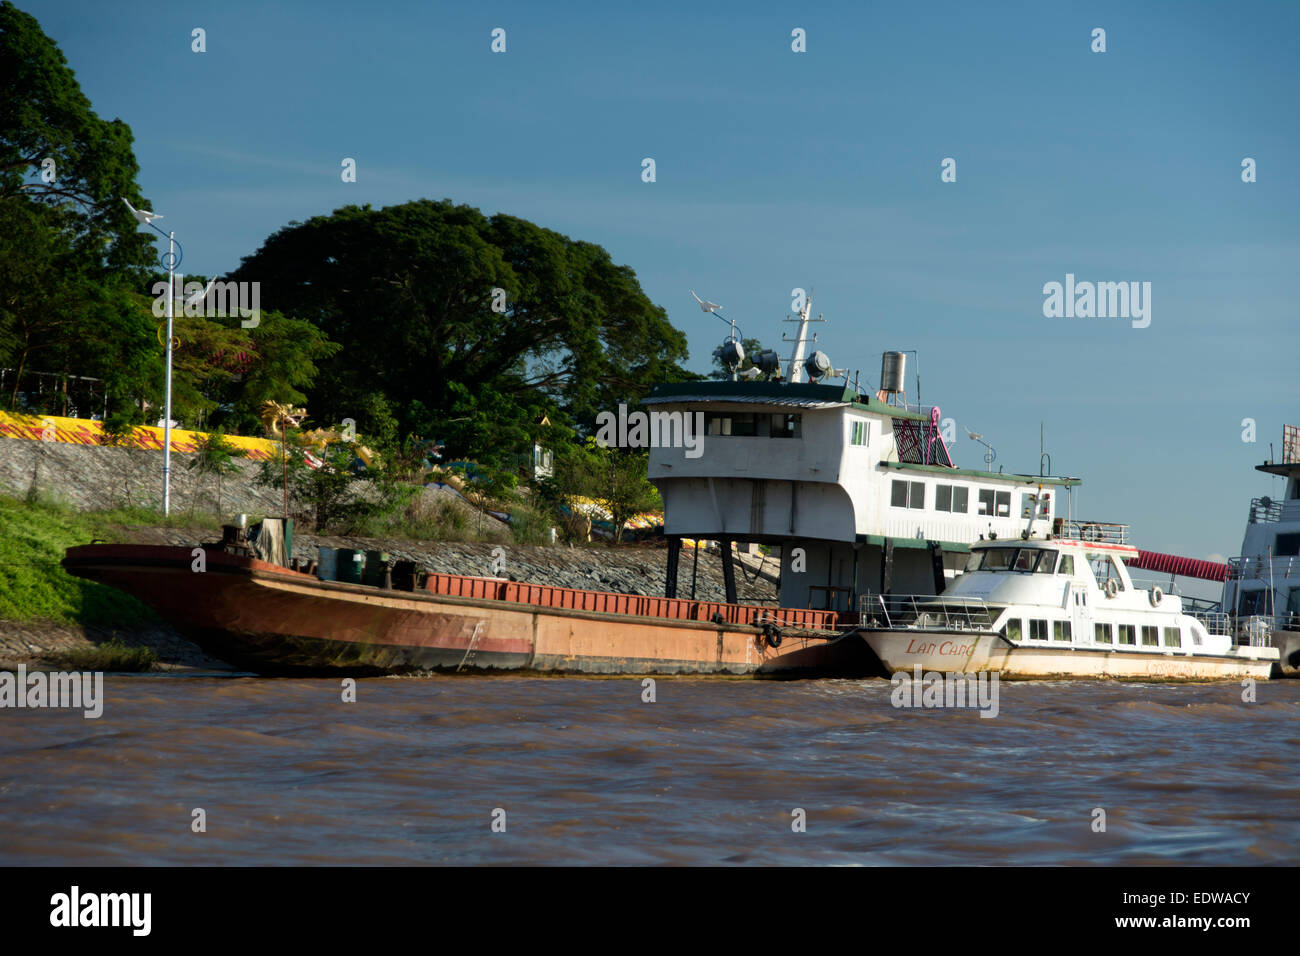 Barche sul fiume Mekong, nel Triangolo d'oro nella Tailandia del Nord / Laos. Foto Stock